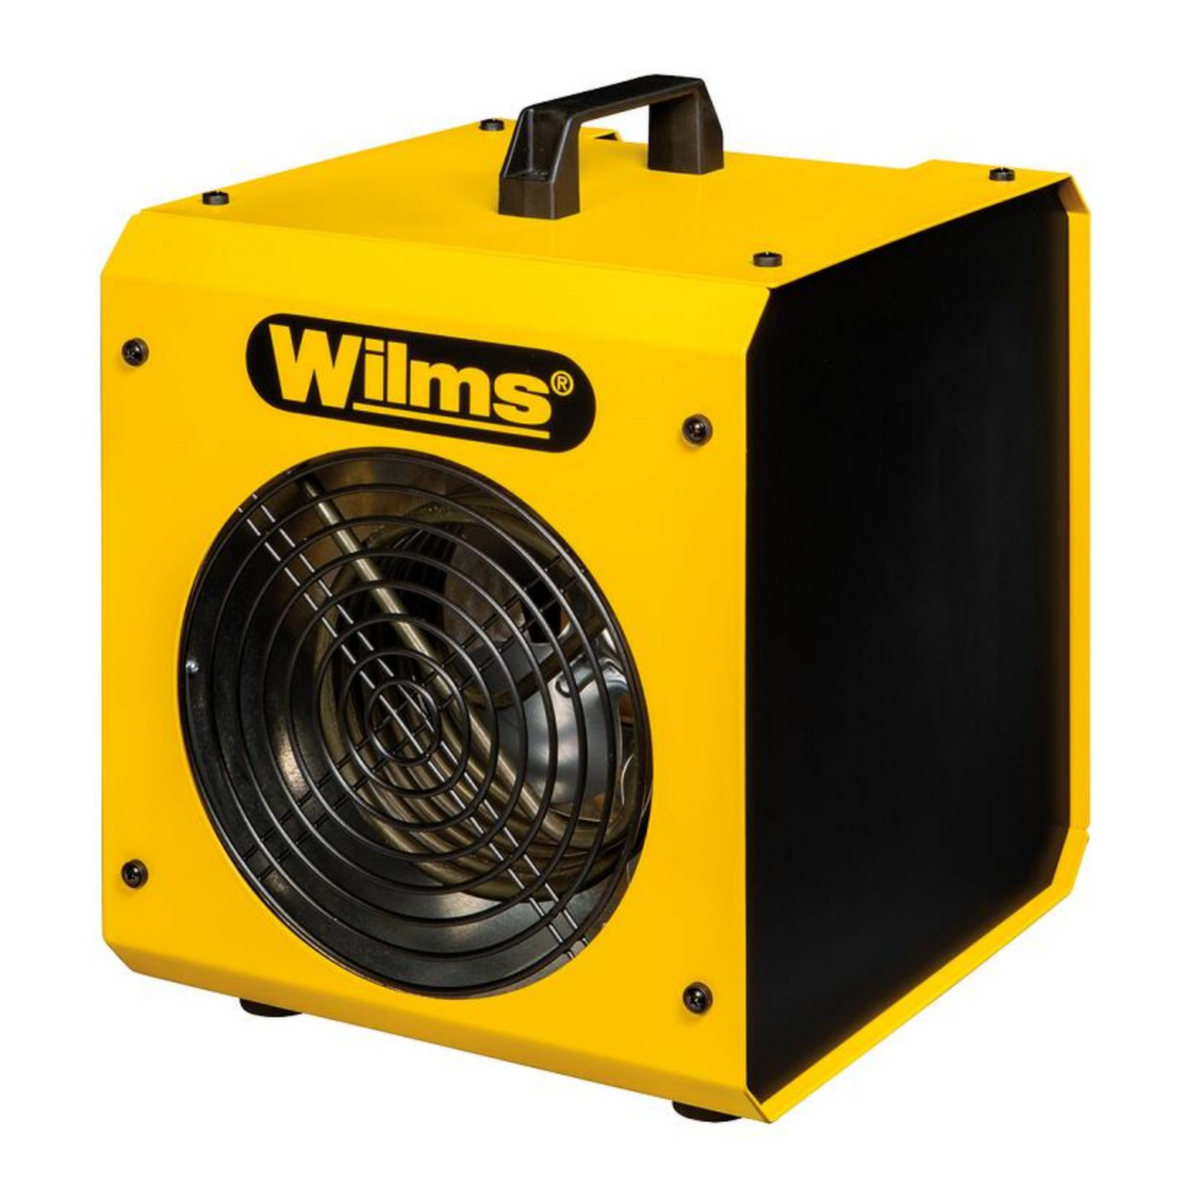 Wilms chauffages électriques EL4  ZOOM